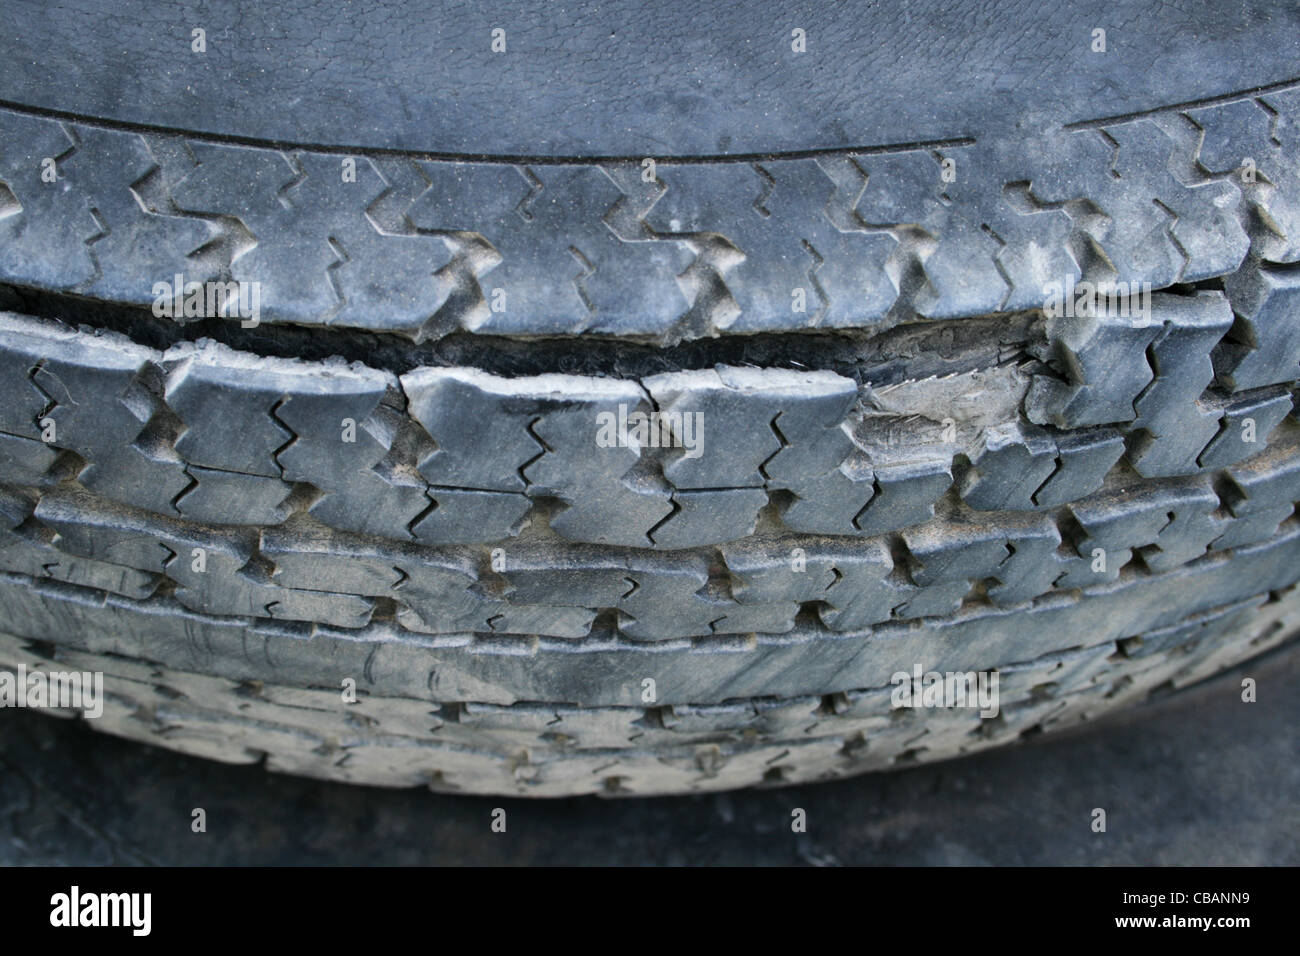 Radial tire -Fotos und -Bildmaterial in hoher Auflösung – Alamy